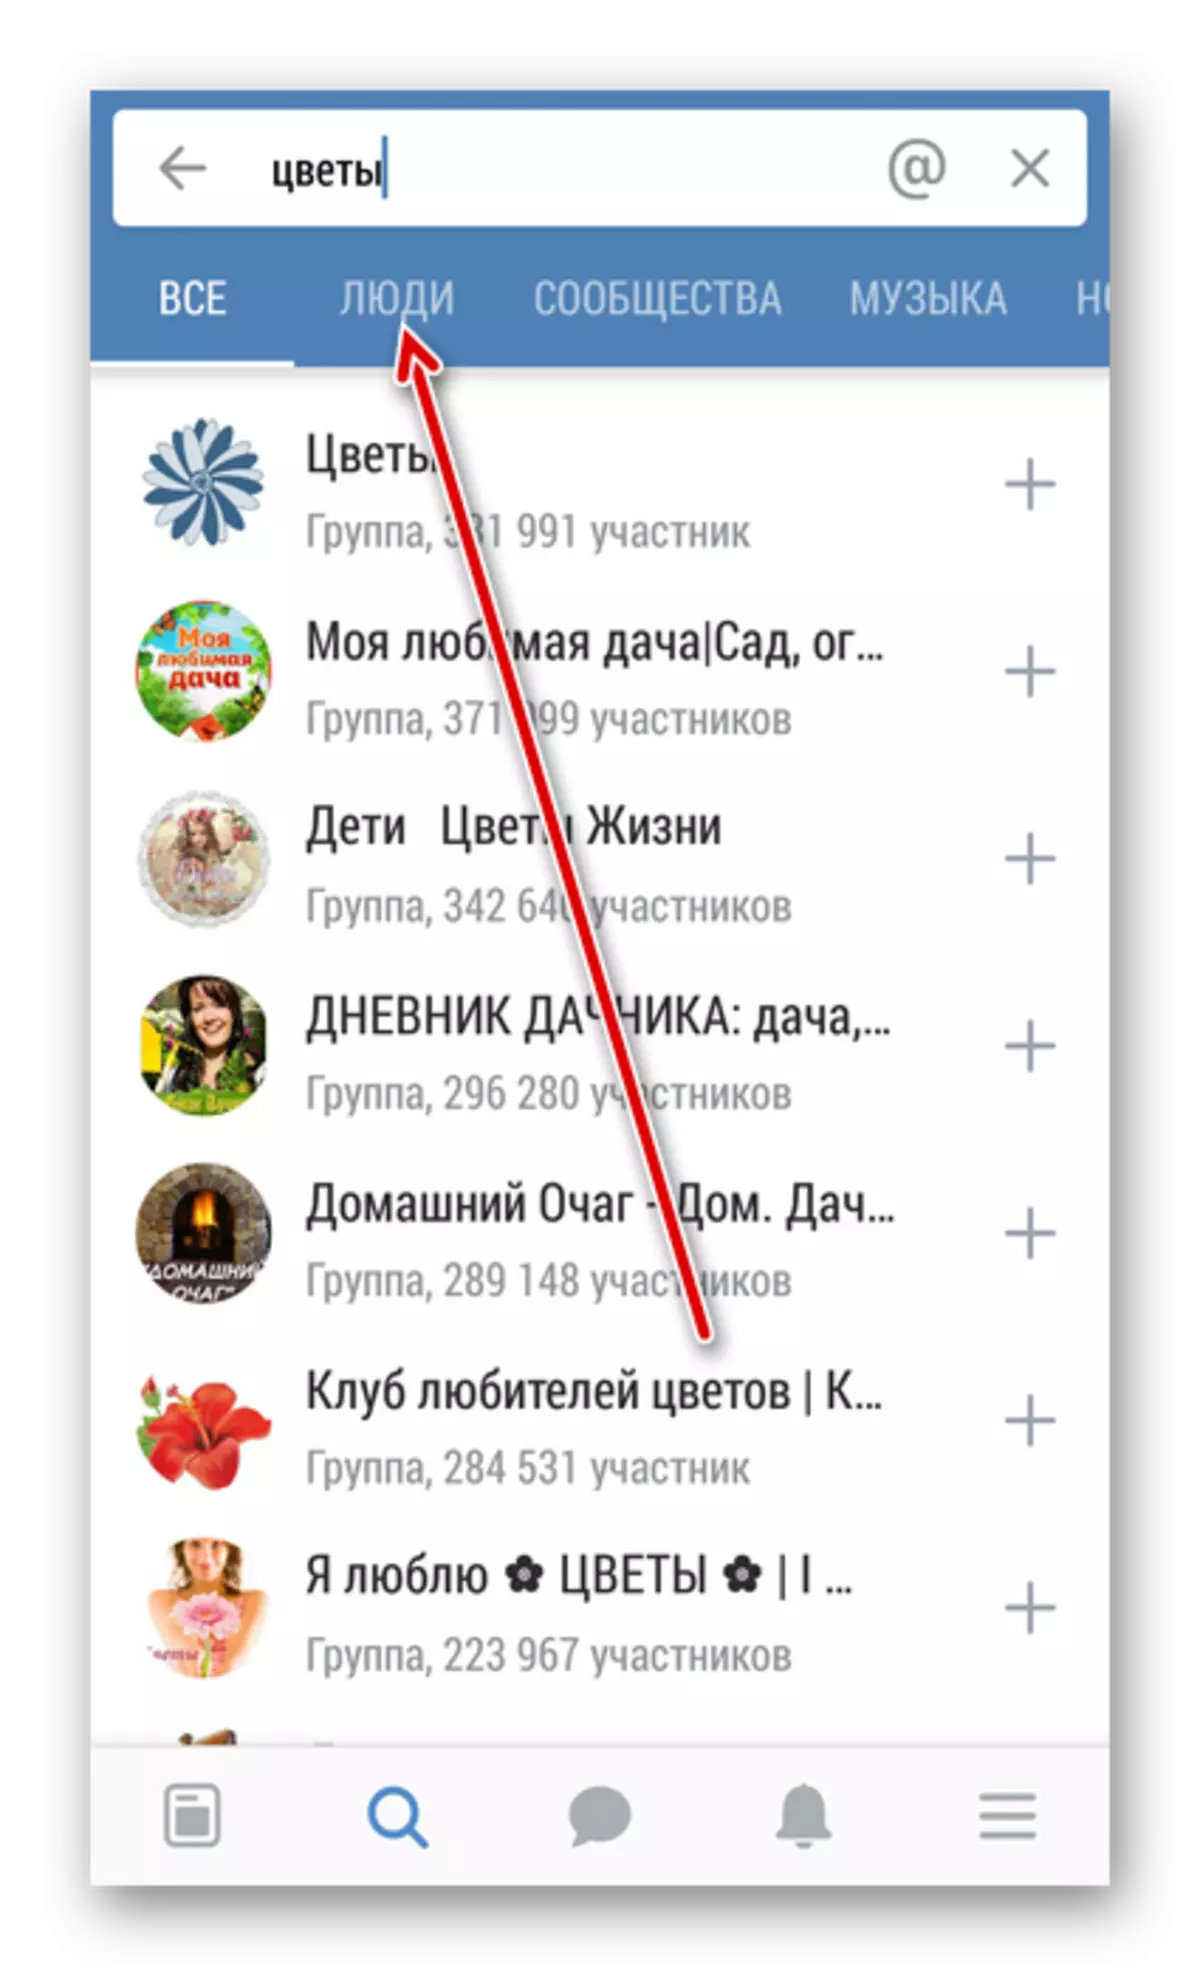 Անցեք Vkontakte դիմումի մարդկանց որոնմանը